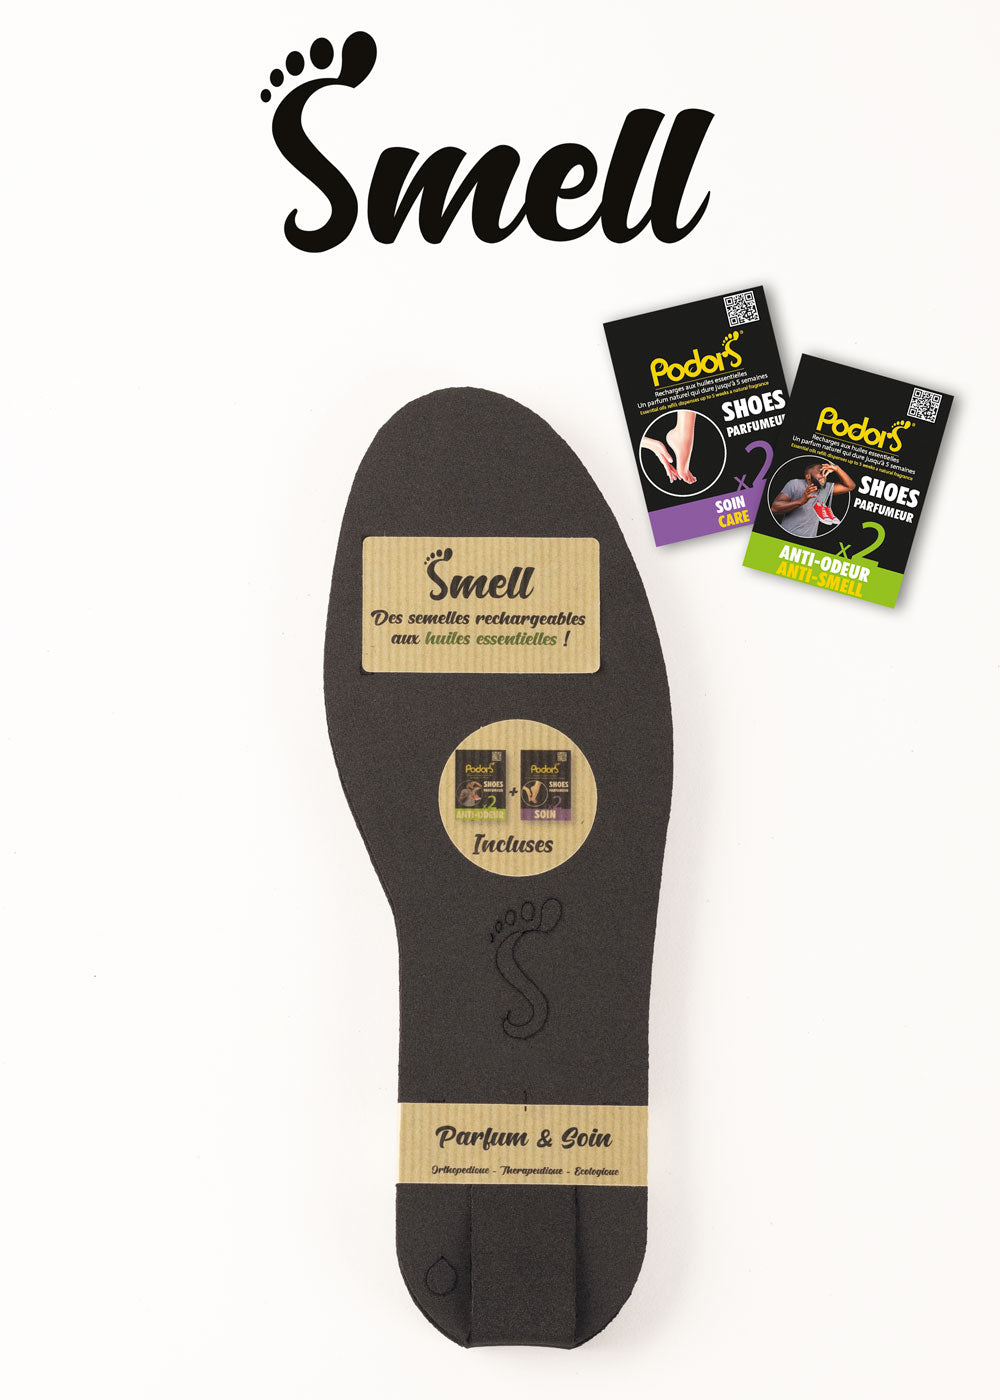 Smell®: Semelles rechargeables aux huiles essentielles + 2 recharges incluses (soin et anti-odeur)